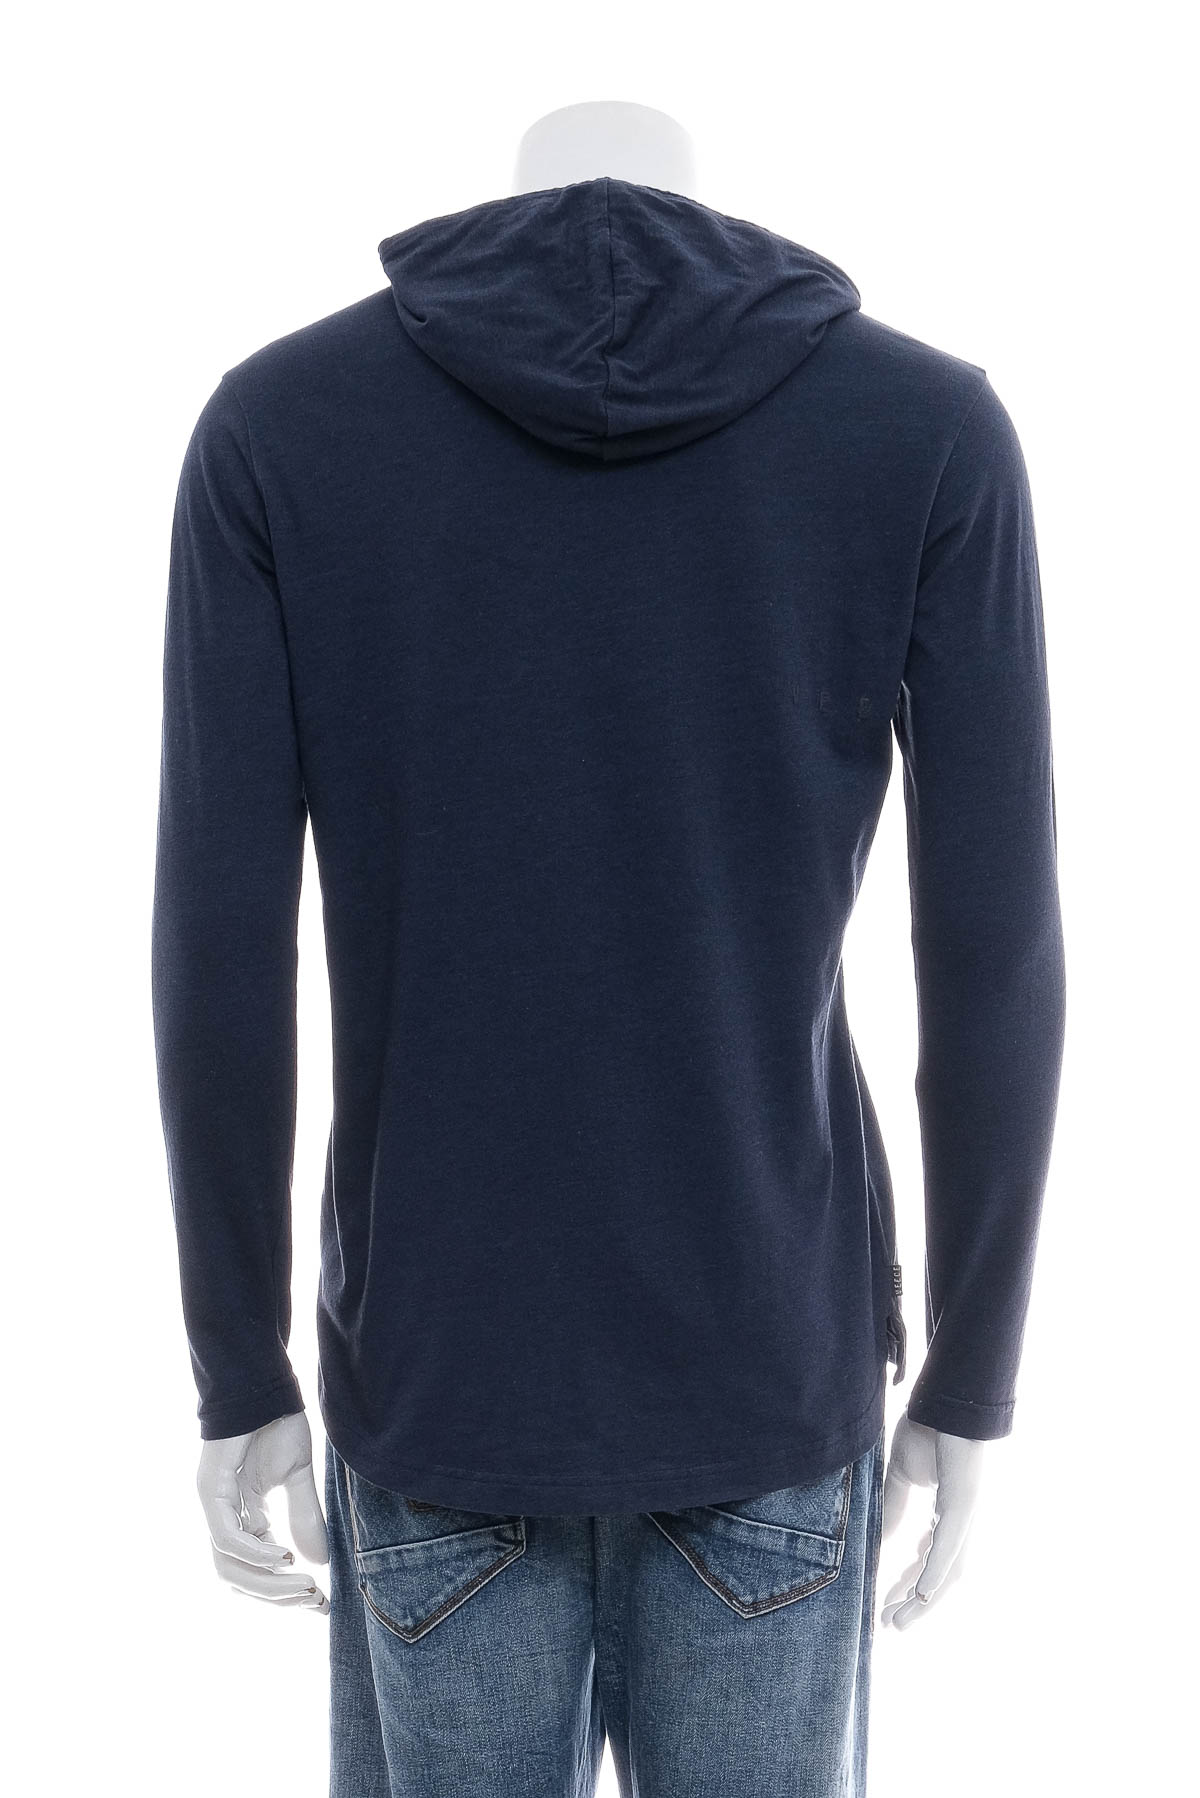 Men's sweatshirt - Veece - 1